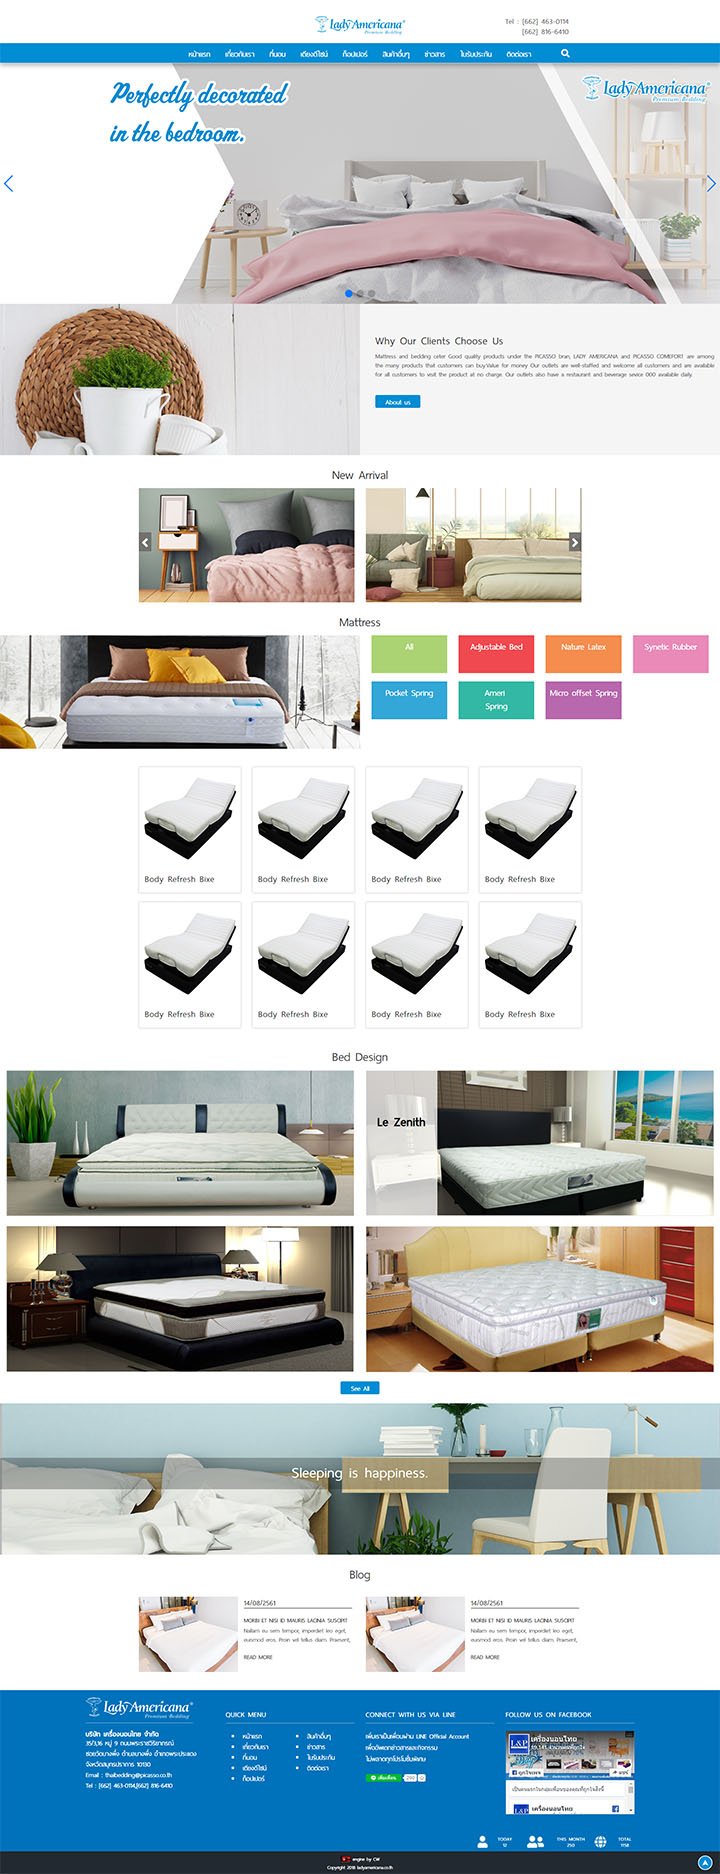 WebDesignออกแบบเว็บไซต์เตียงที่นอน,รับเขียนเว็บเฟอร์นิเจอร์,สร้าเว็บใหม่ชุดเครื่องนอน